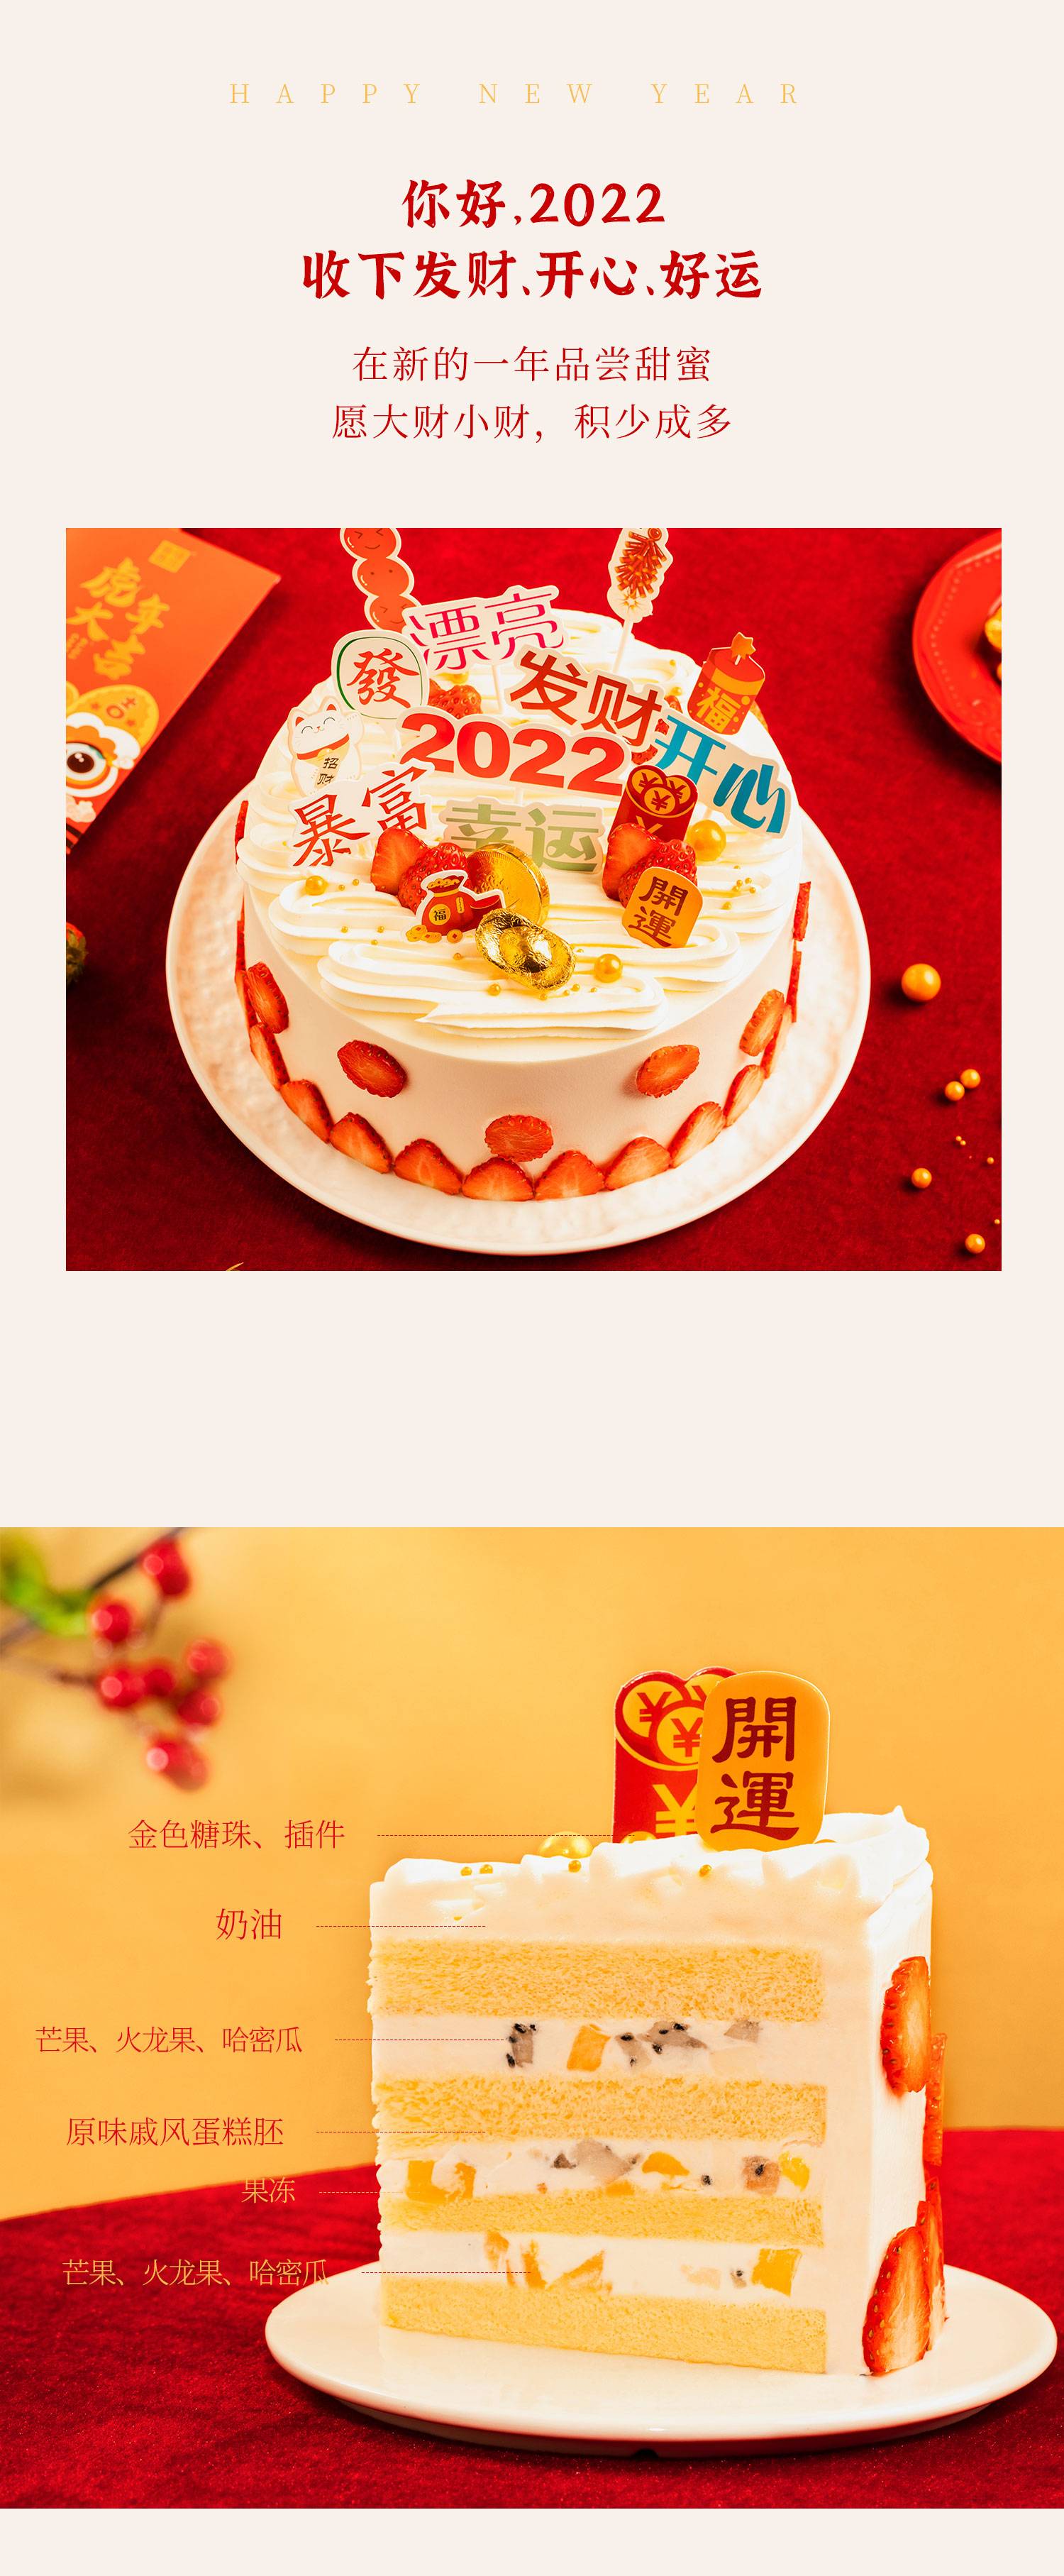 浪漫果纷蛋糕-6磅_幸福西饼蛋糕预定_加盟幸福西饼_深圳幸福西饼官方网站